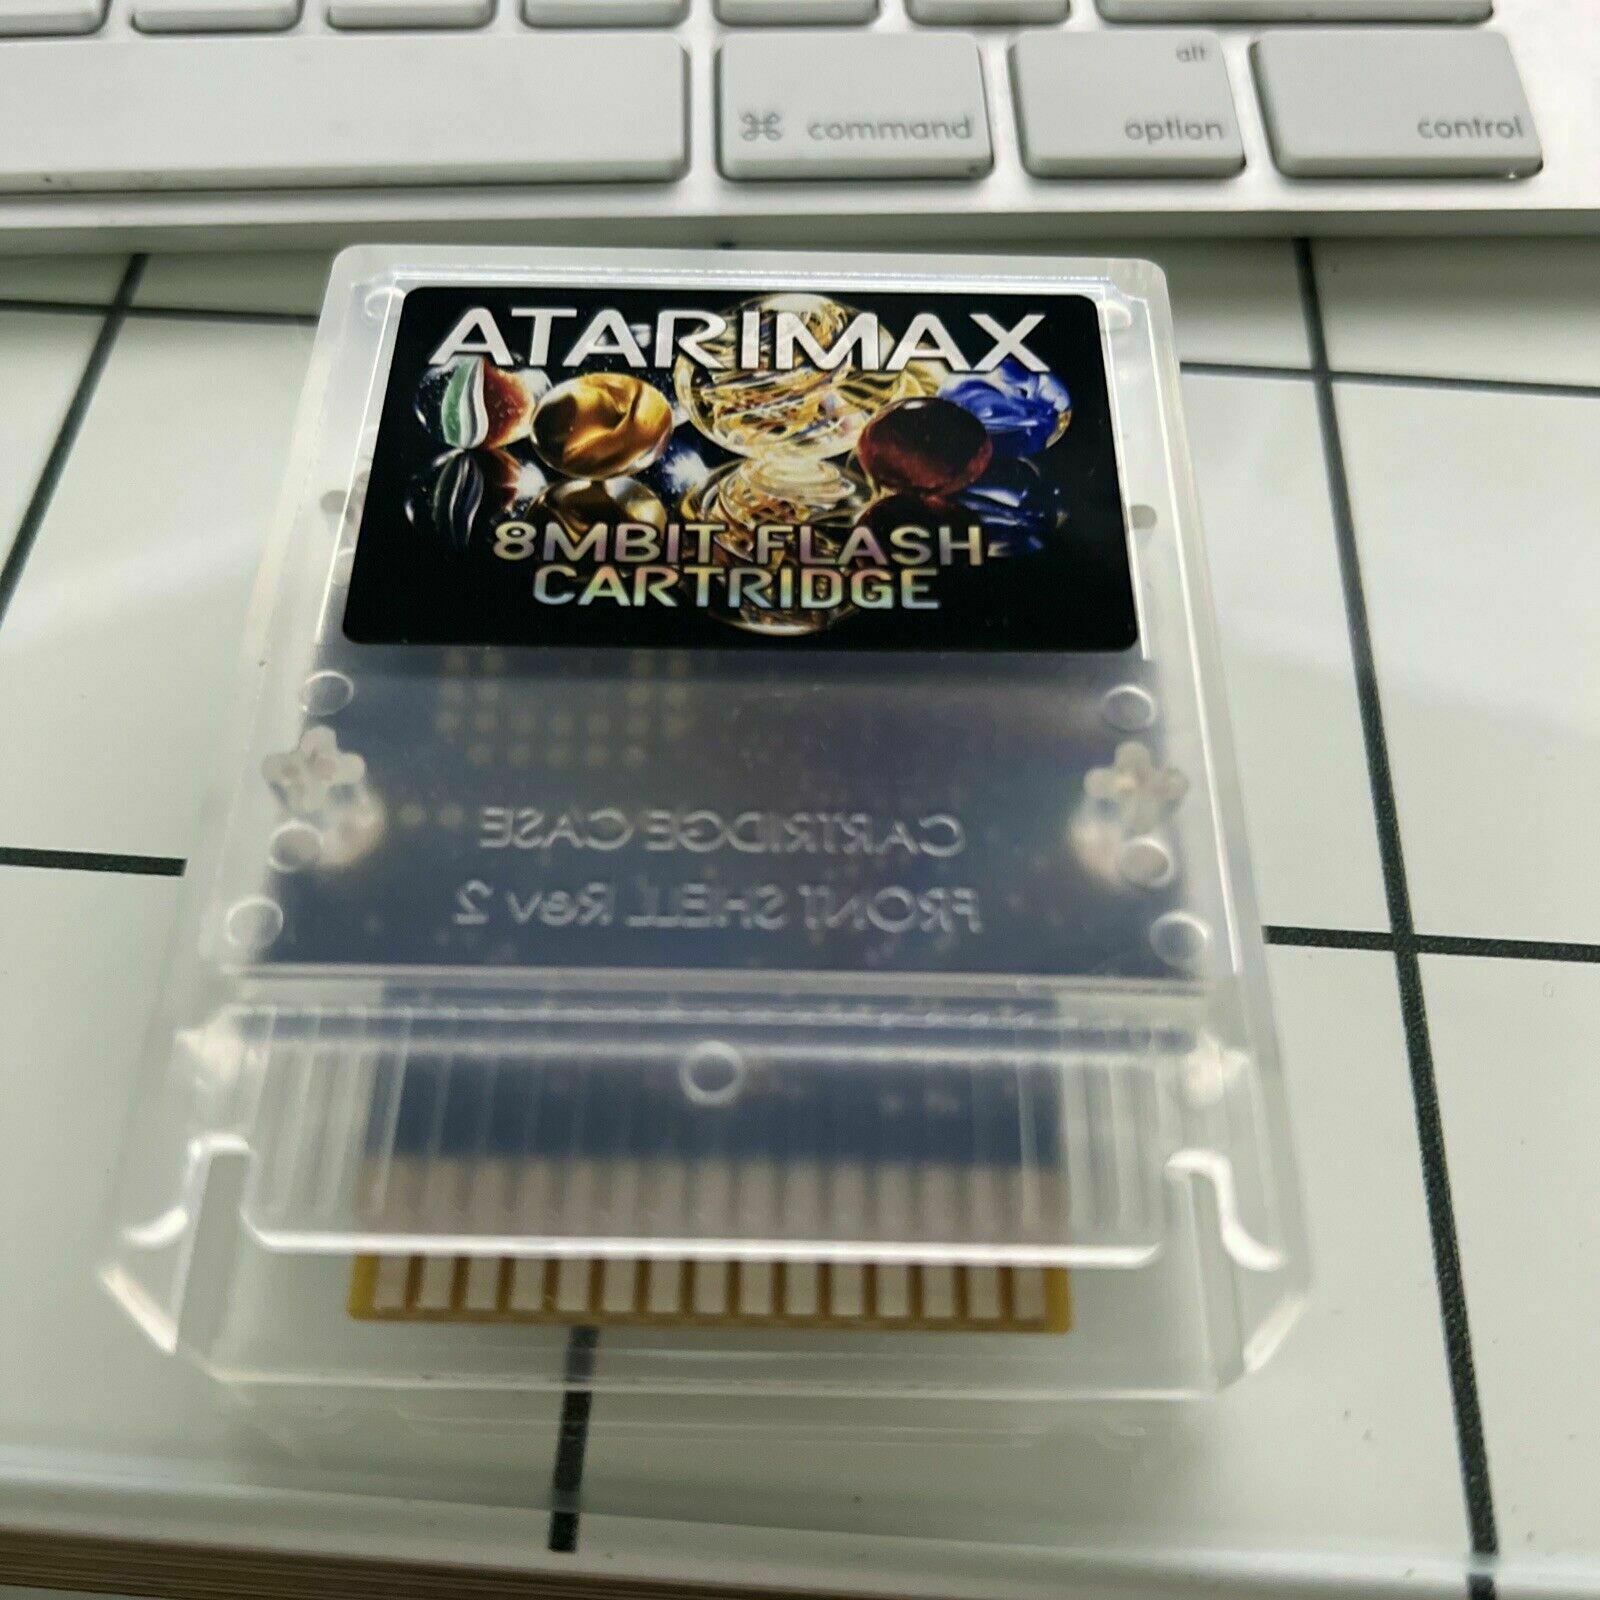 AtariMax cartridge (volume 3).  For ATARI 800 XL  130XE  65XE  XEGS